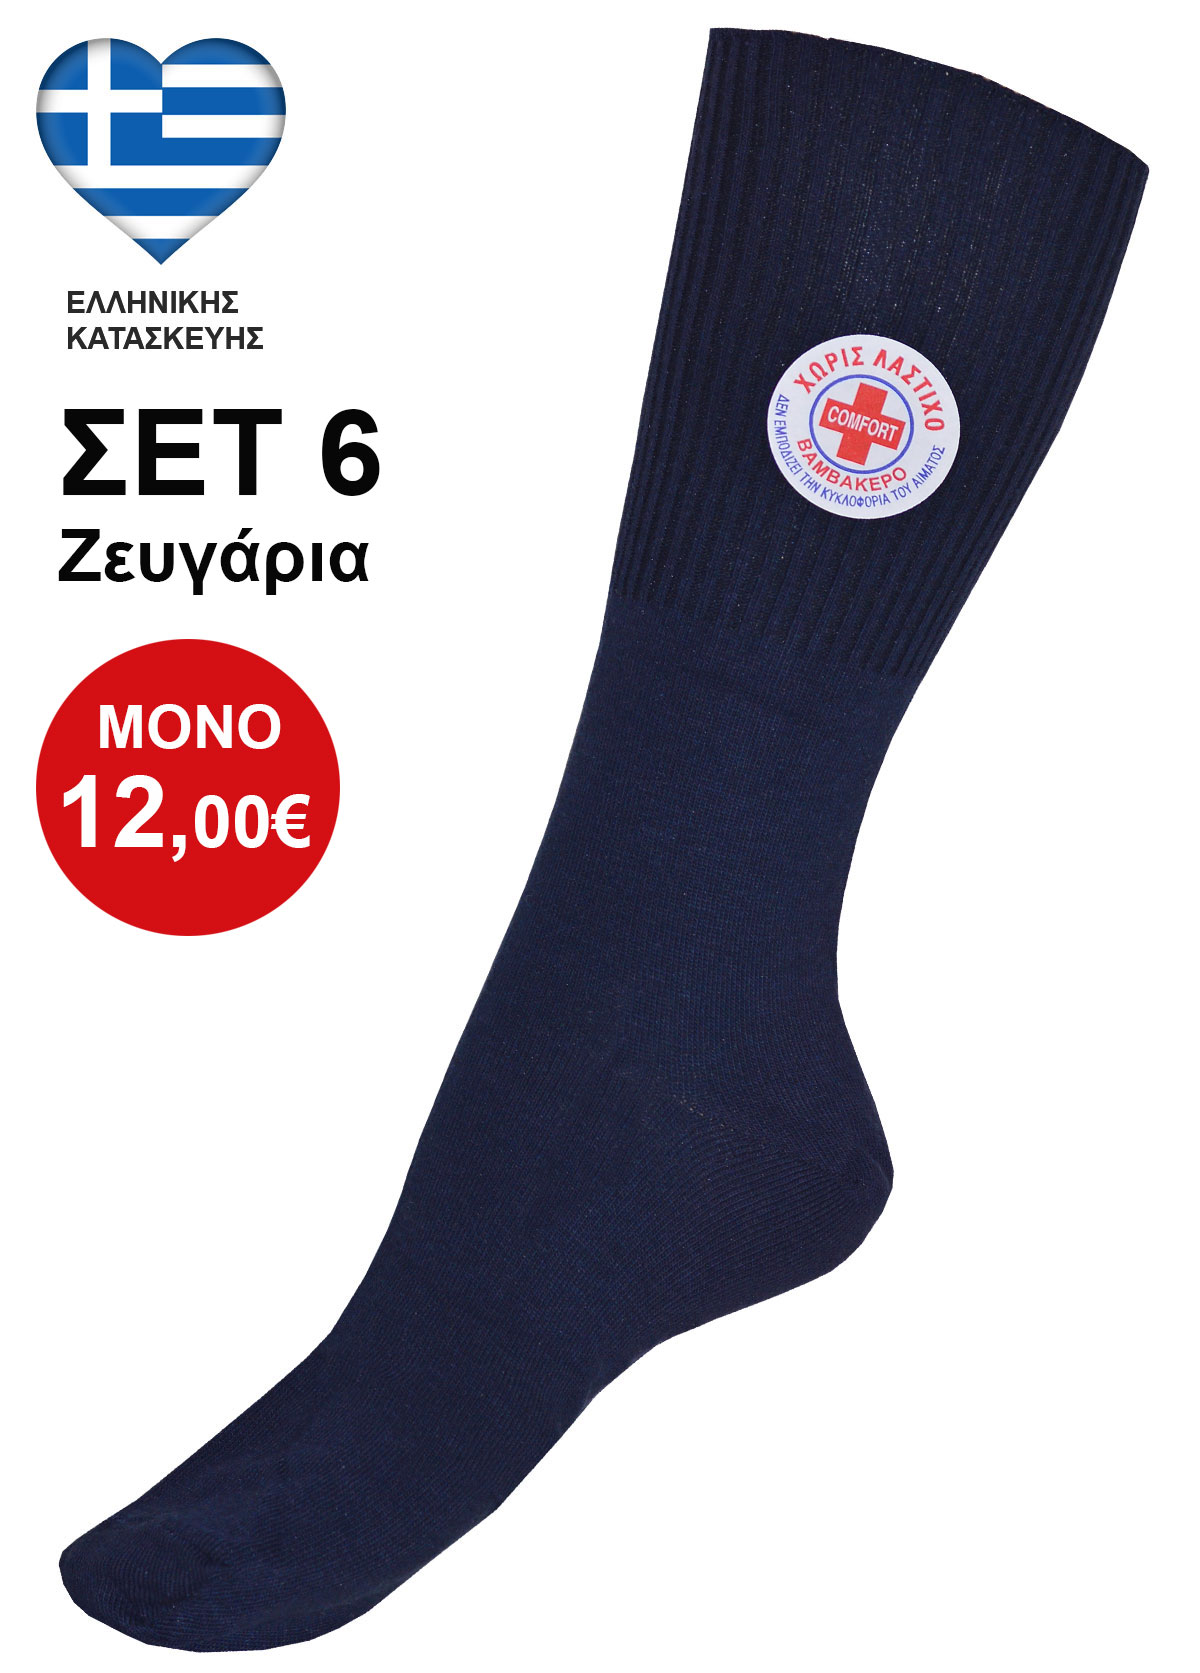 ΣΕΤ 6 Ζευγάρια Ειδικές Μπλε Βαμβακερές Κάλτσες Για Διαβητικούς Χωρίς Λάστιχο Ελληνικής Κατασκευής